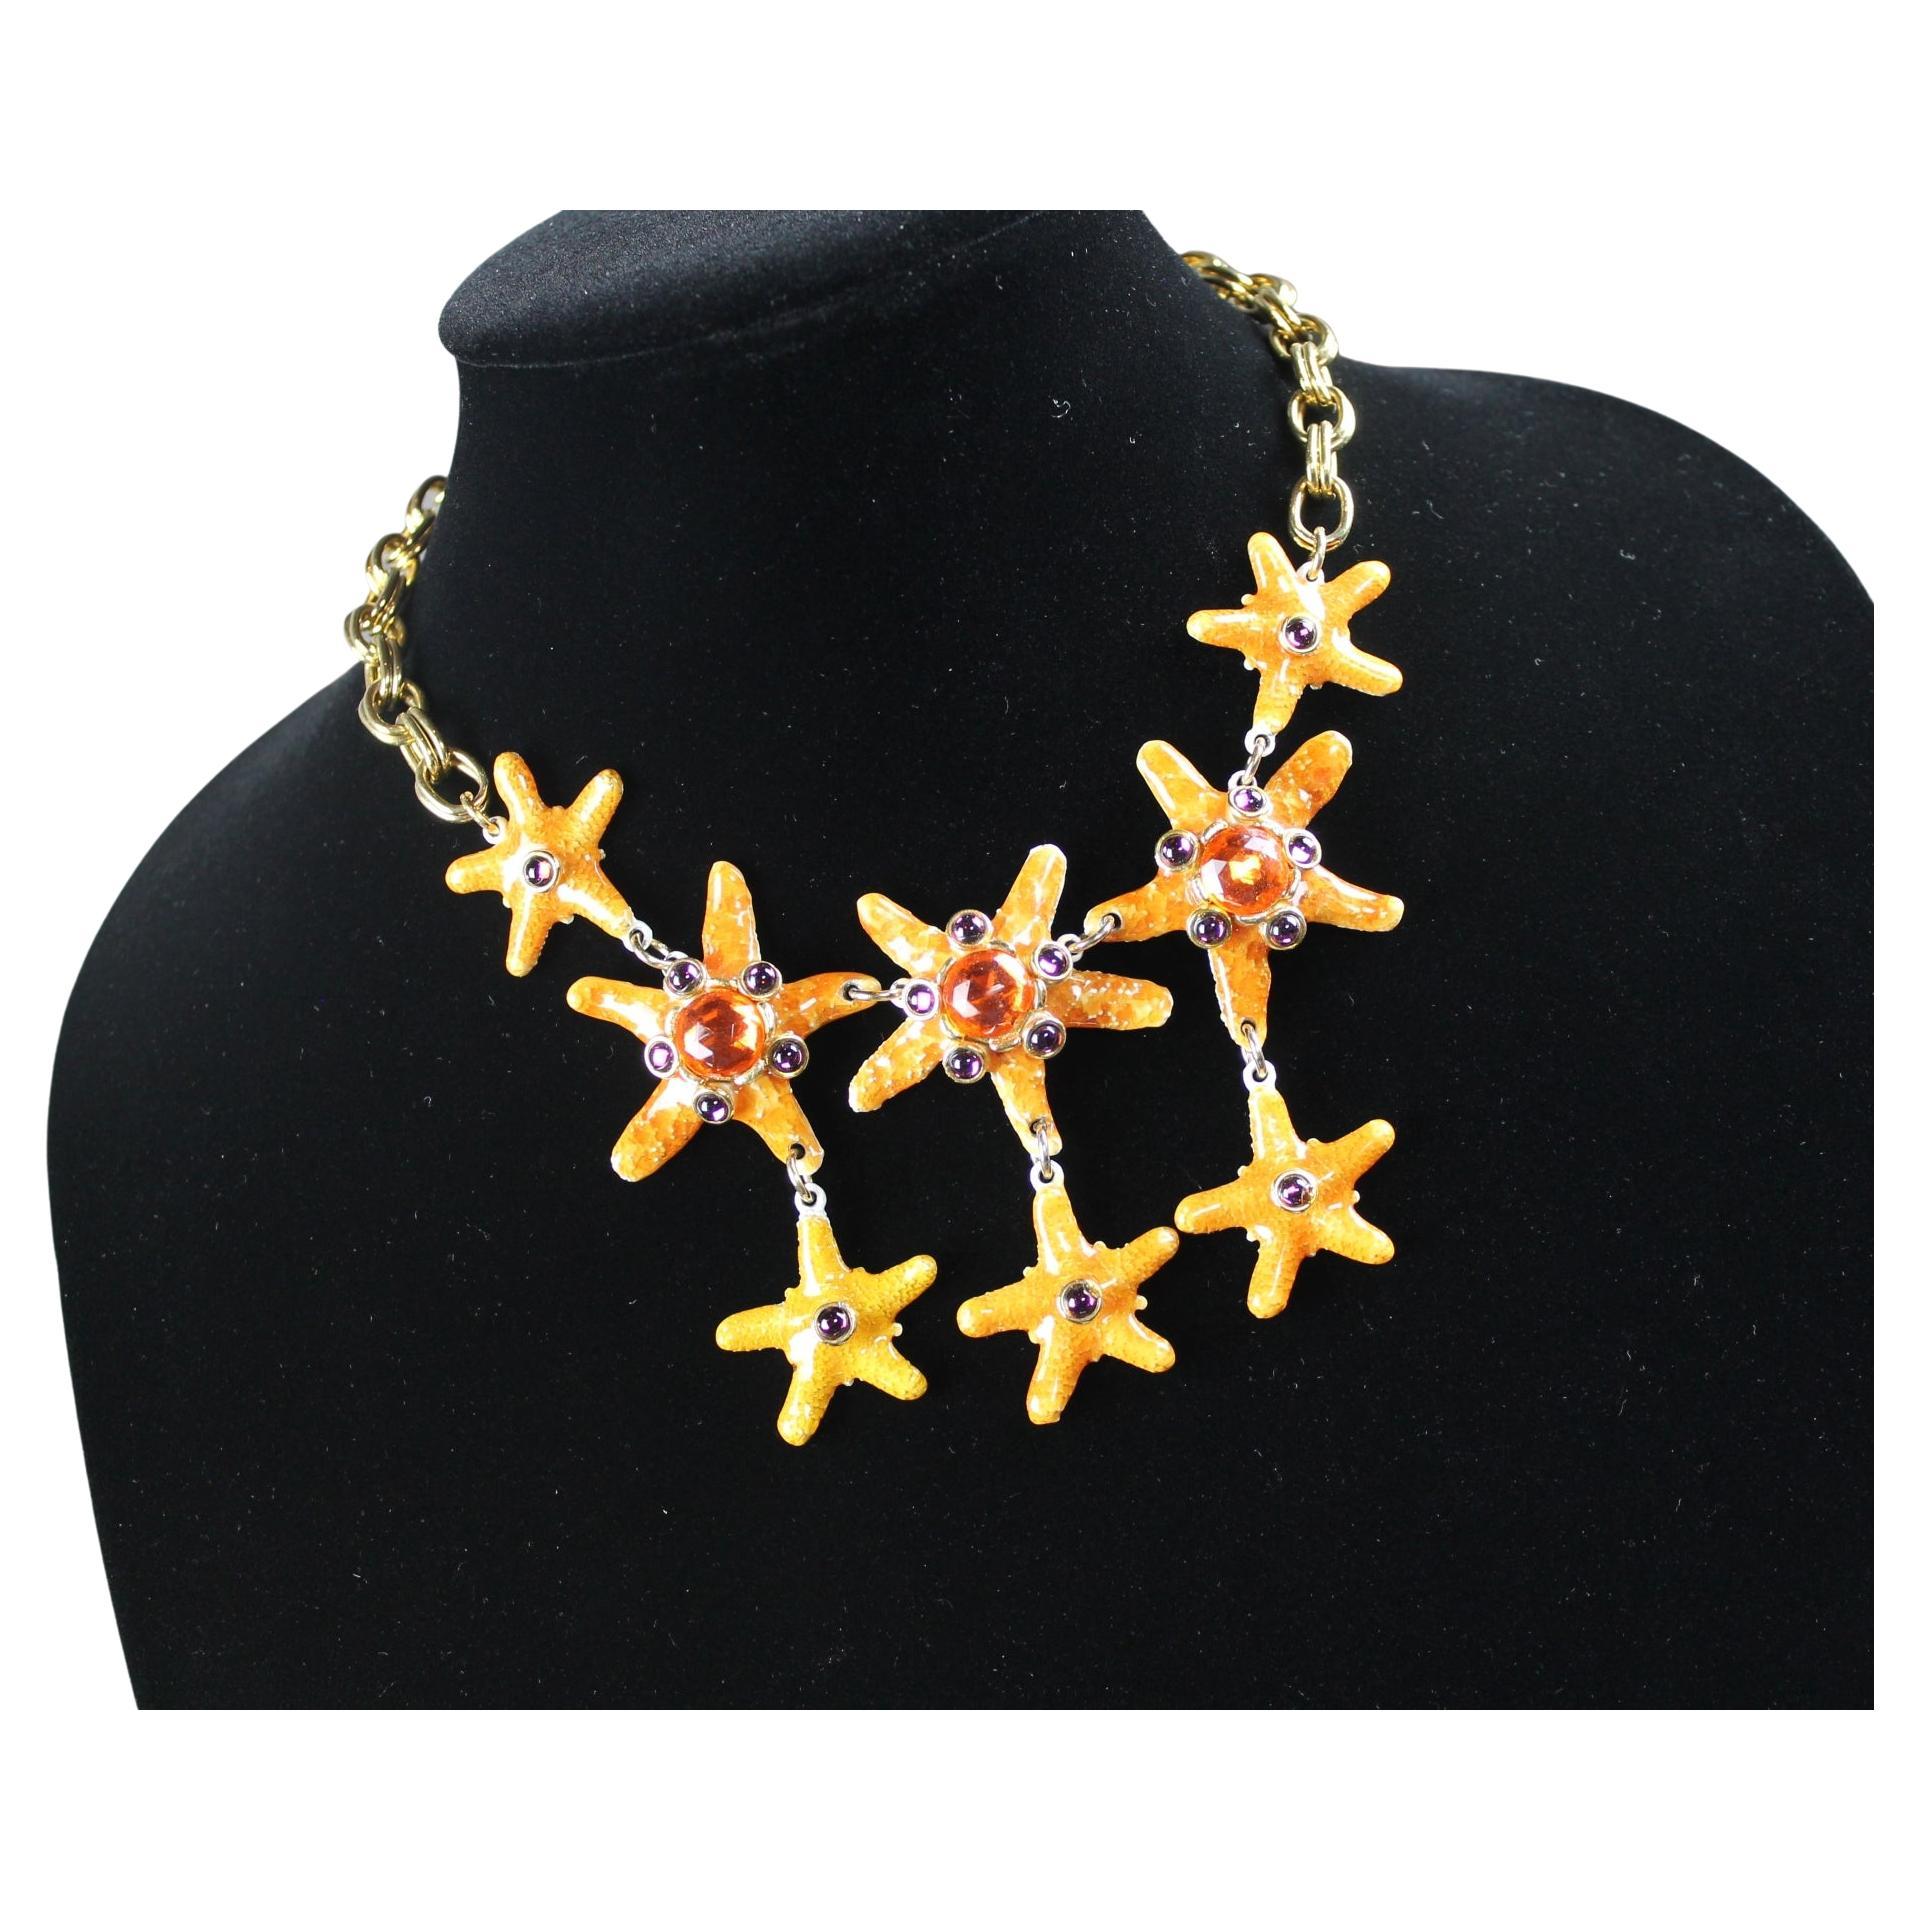 Vintage-Halskette mit Seestern-Bib, signiert CRAFT, Edelstein-Craft mit Juwelen